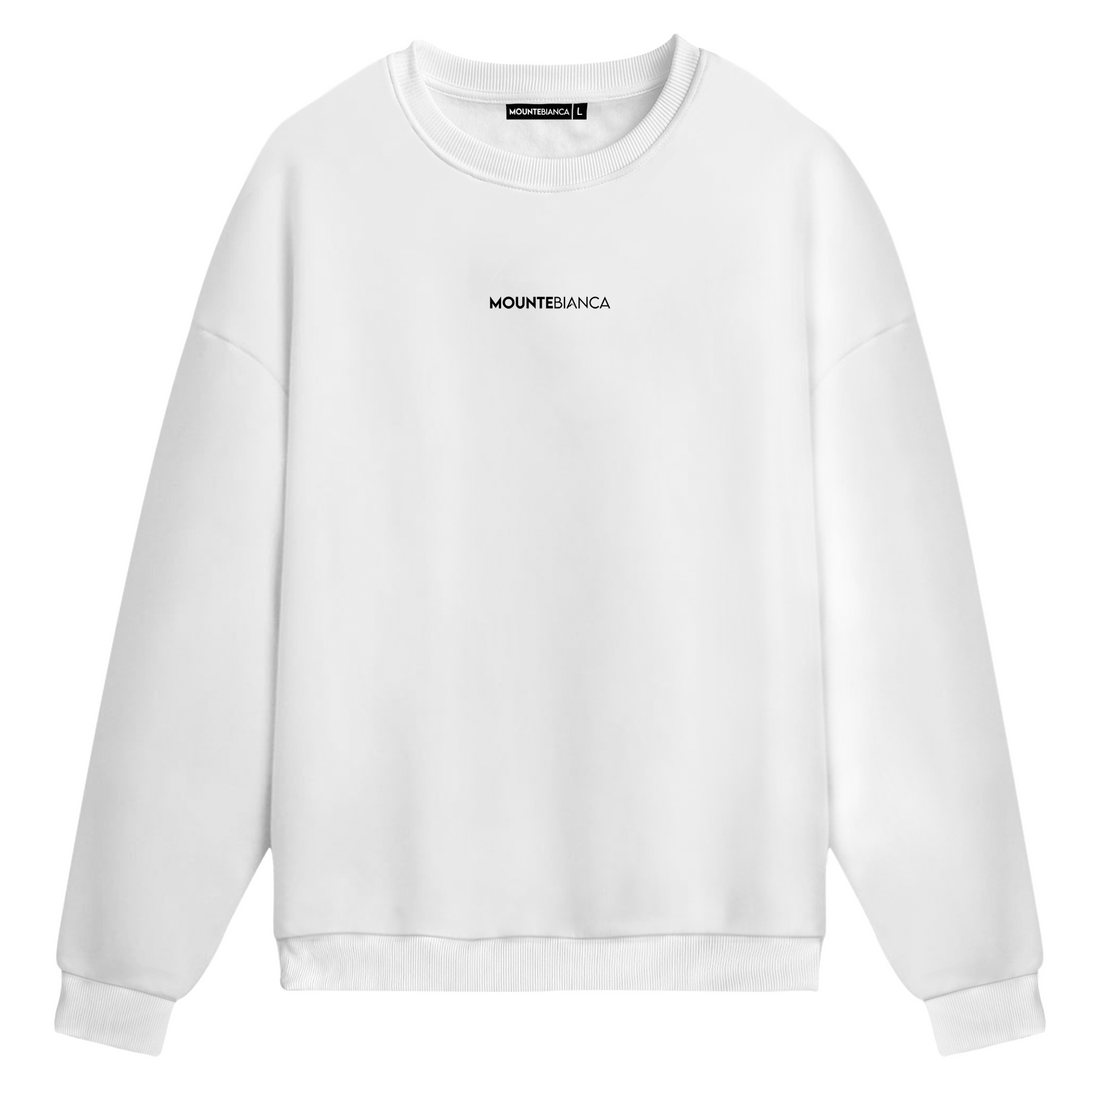 Uno - Sweatshirt